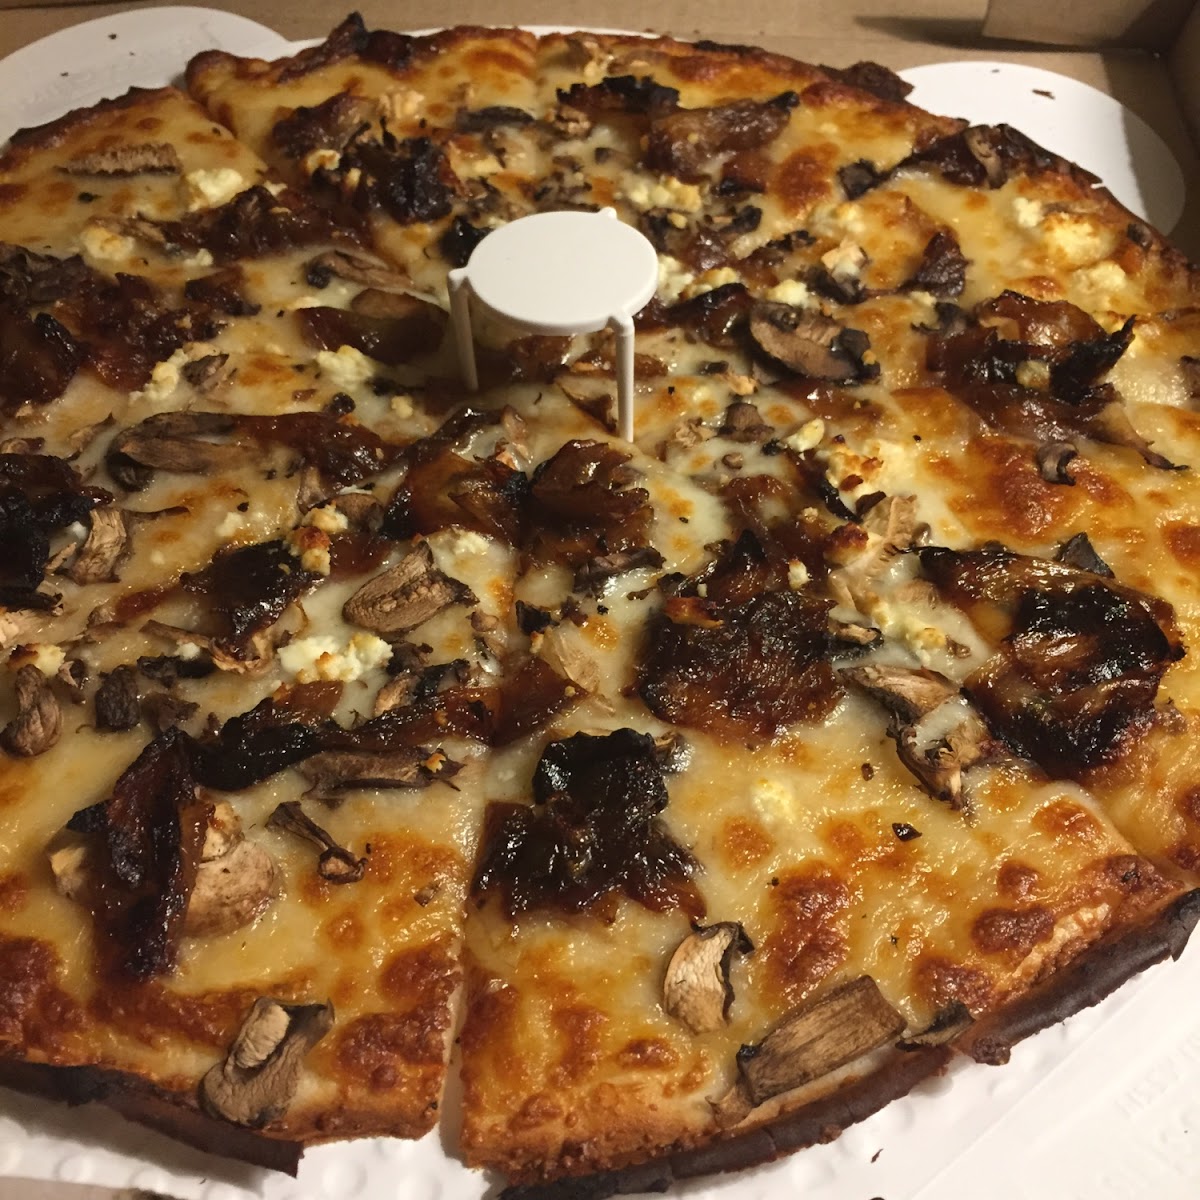 Tuscany 3 mushroom pizza